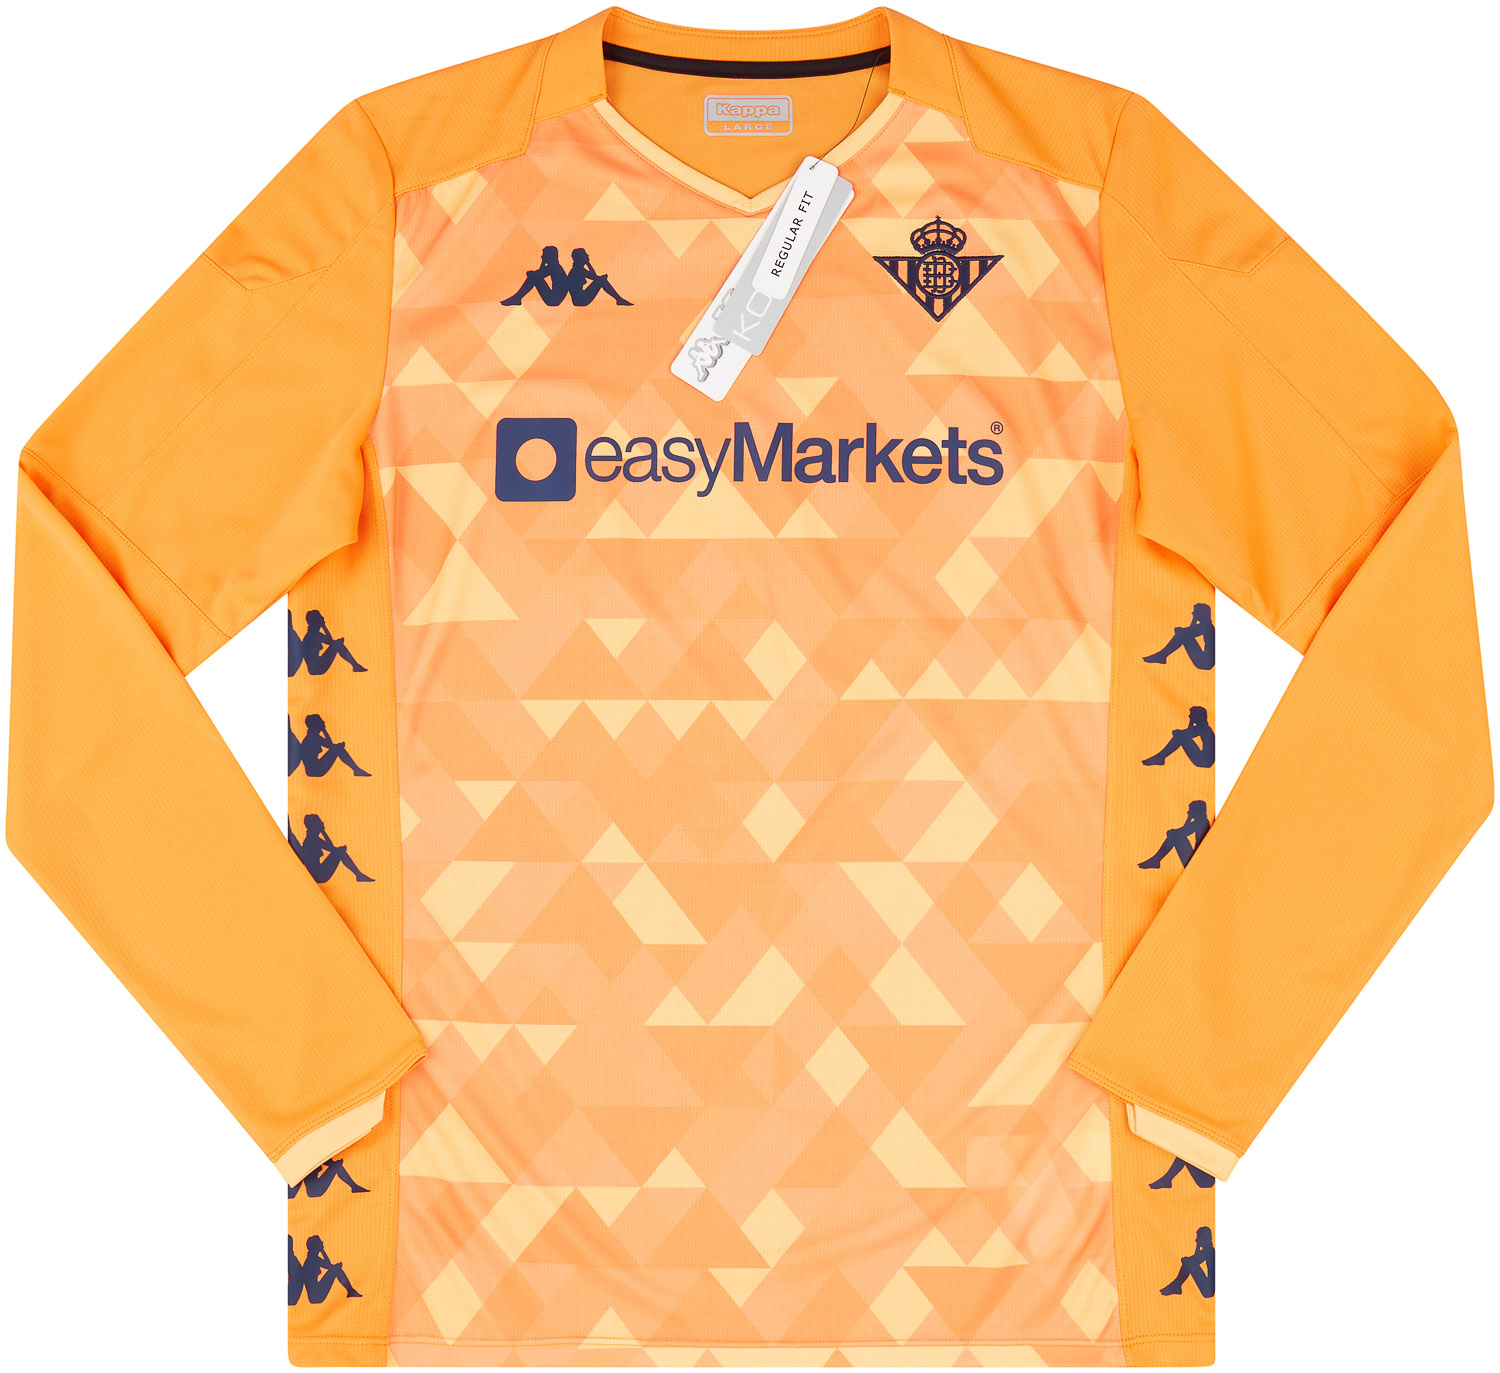 2019-20 Real Betis GK Shirt